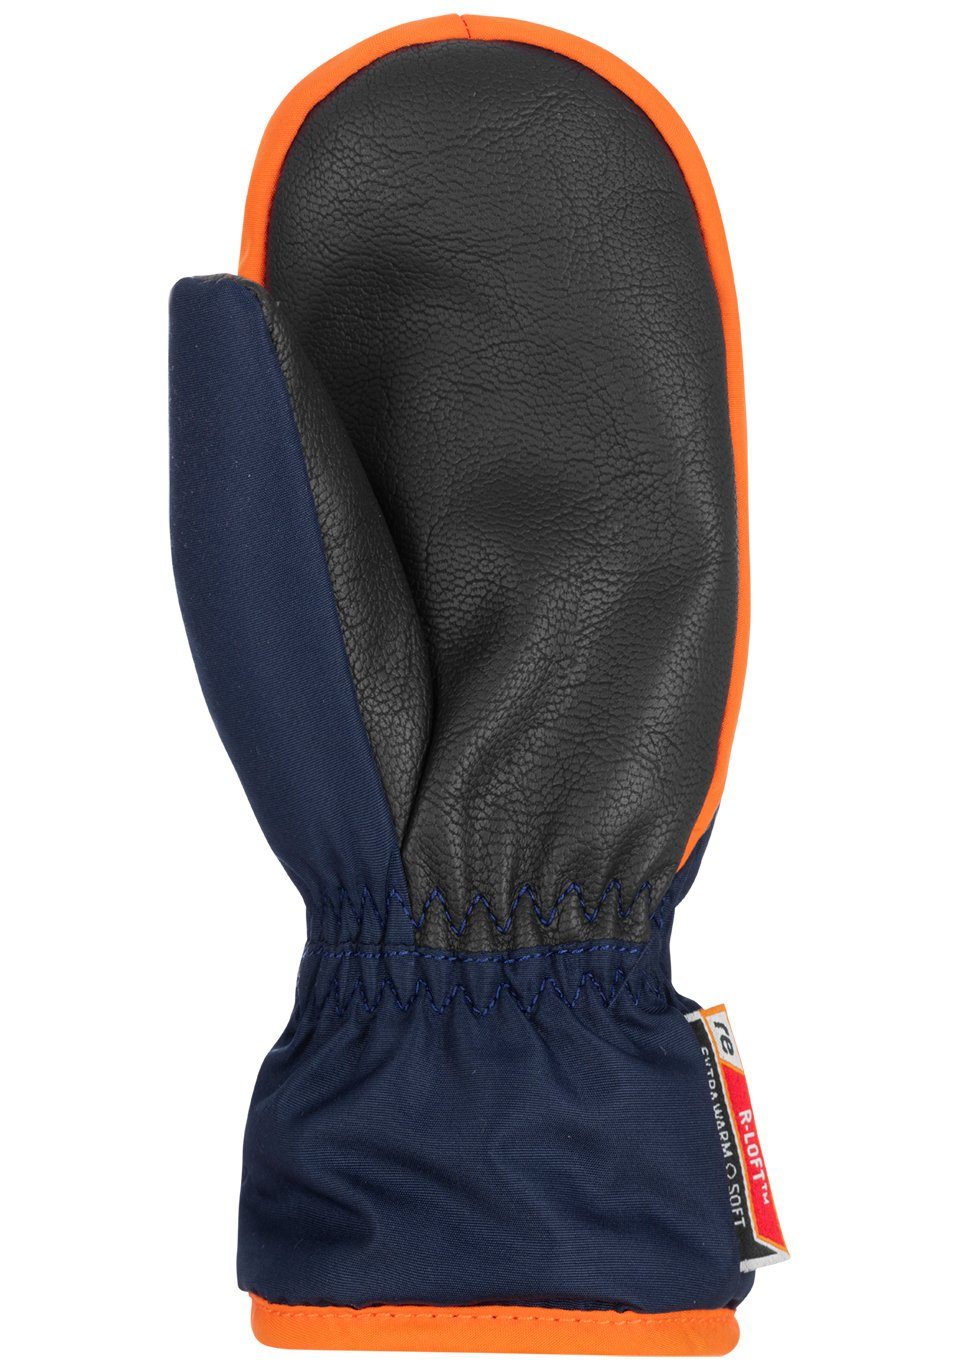 Reusch Fäustlinge Ben Mitten mit orange-blau praktischem Reißverschluss